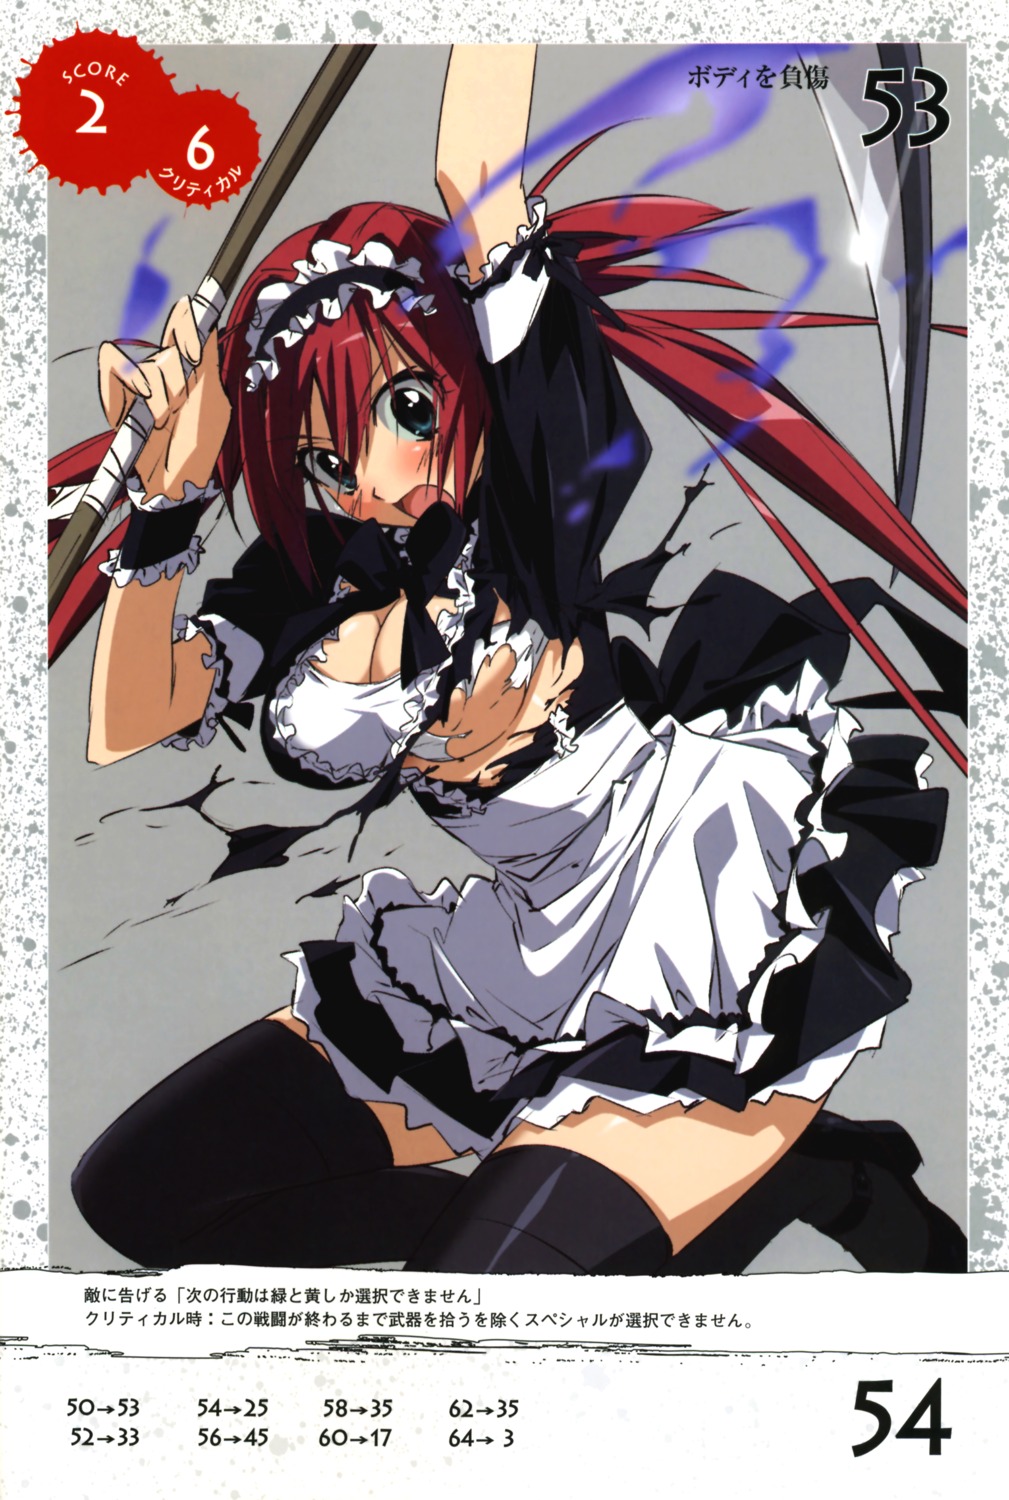 airi cleavage maid queen's_blade takamura_kazuhiro thighhighs torn_clothes weapon